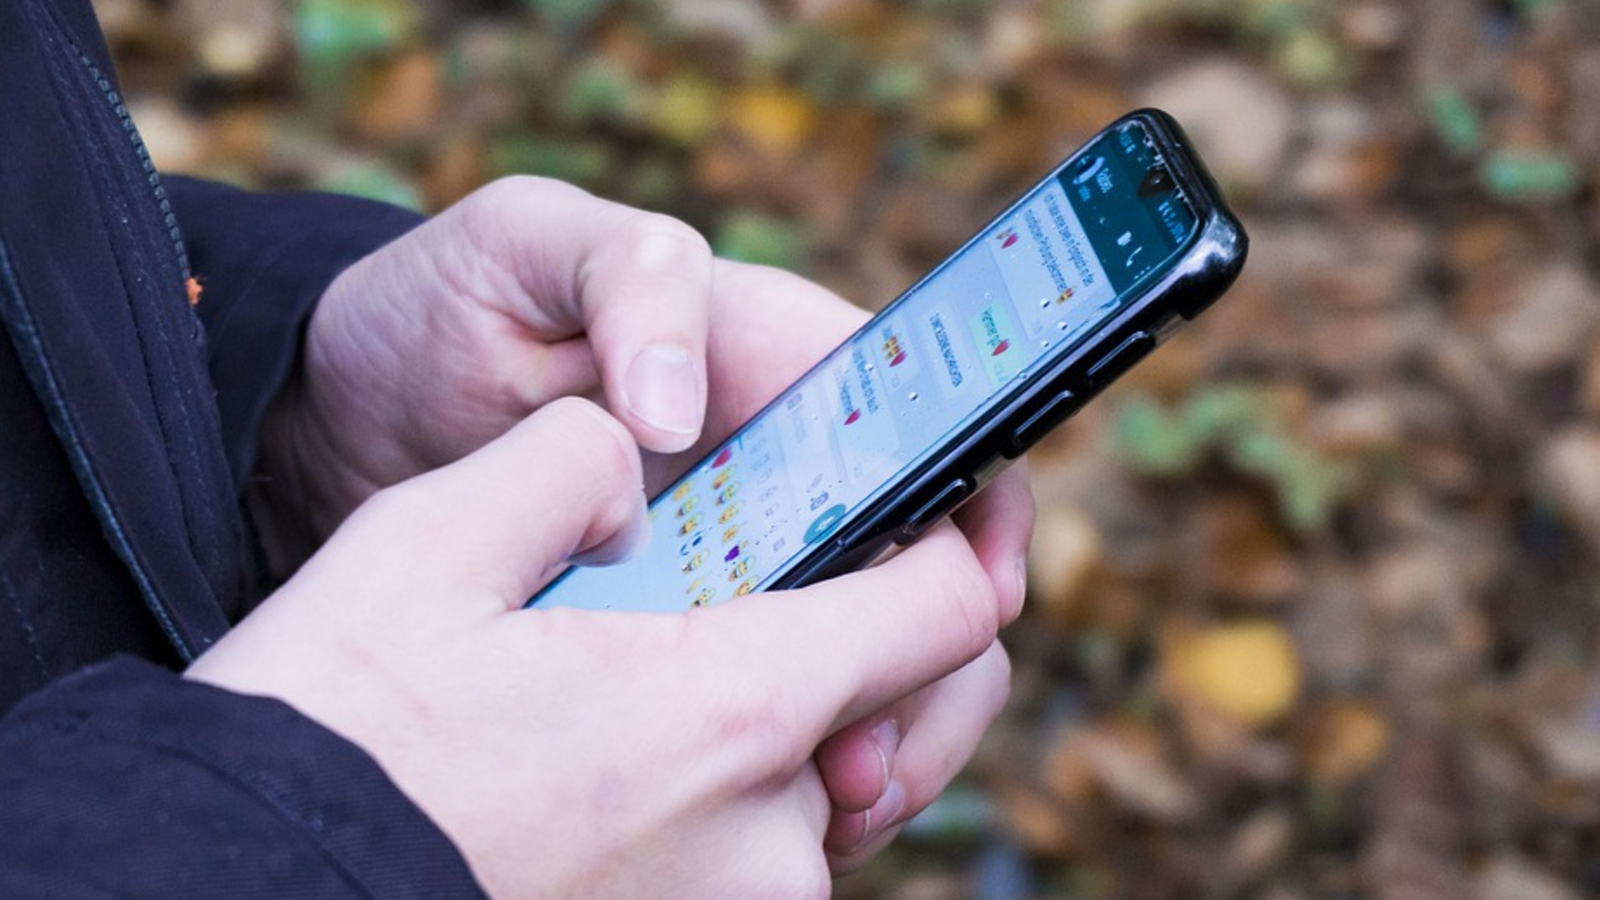 Tracking : l'appli mobile StopCovid obtient l'accord de la CNIL, sous conditions